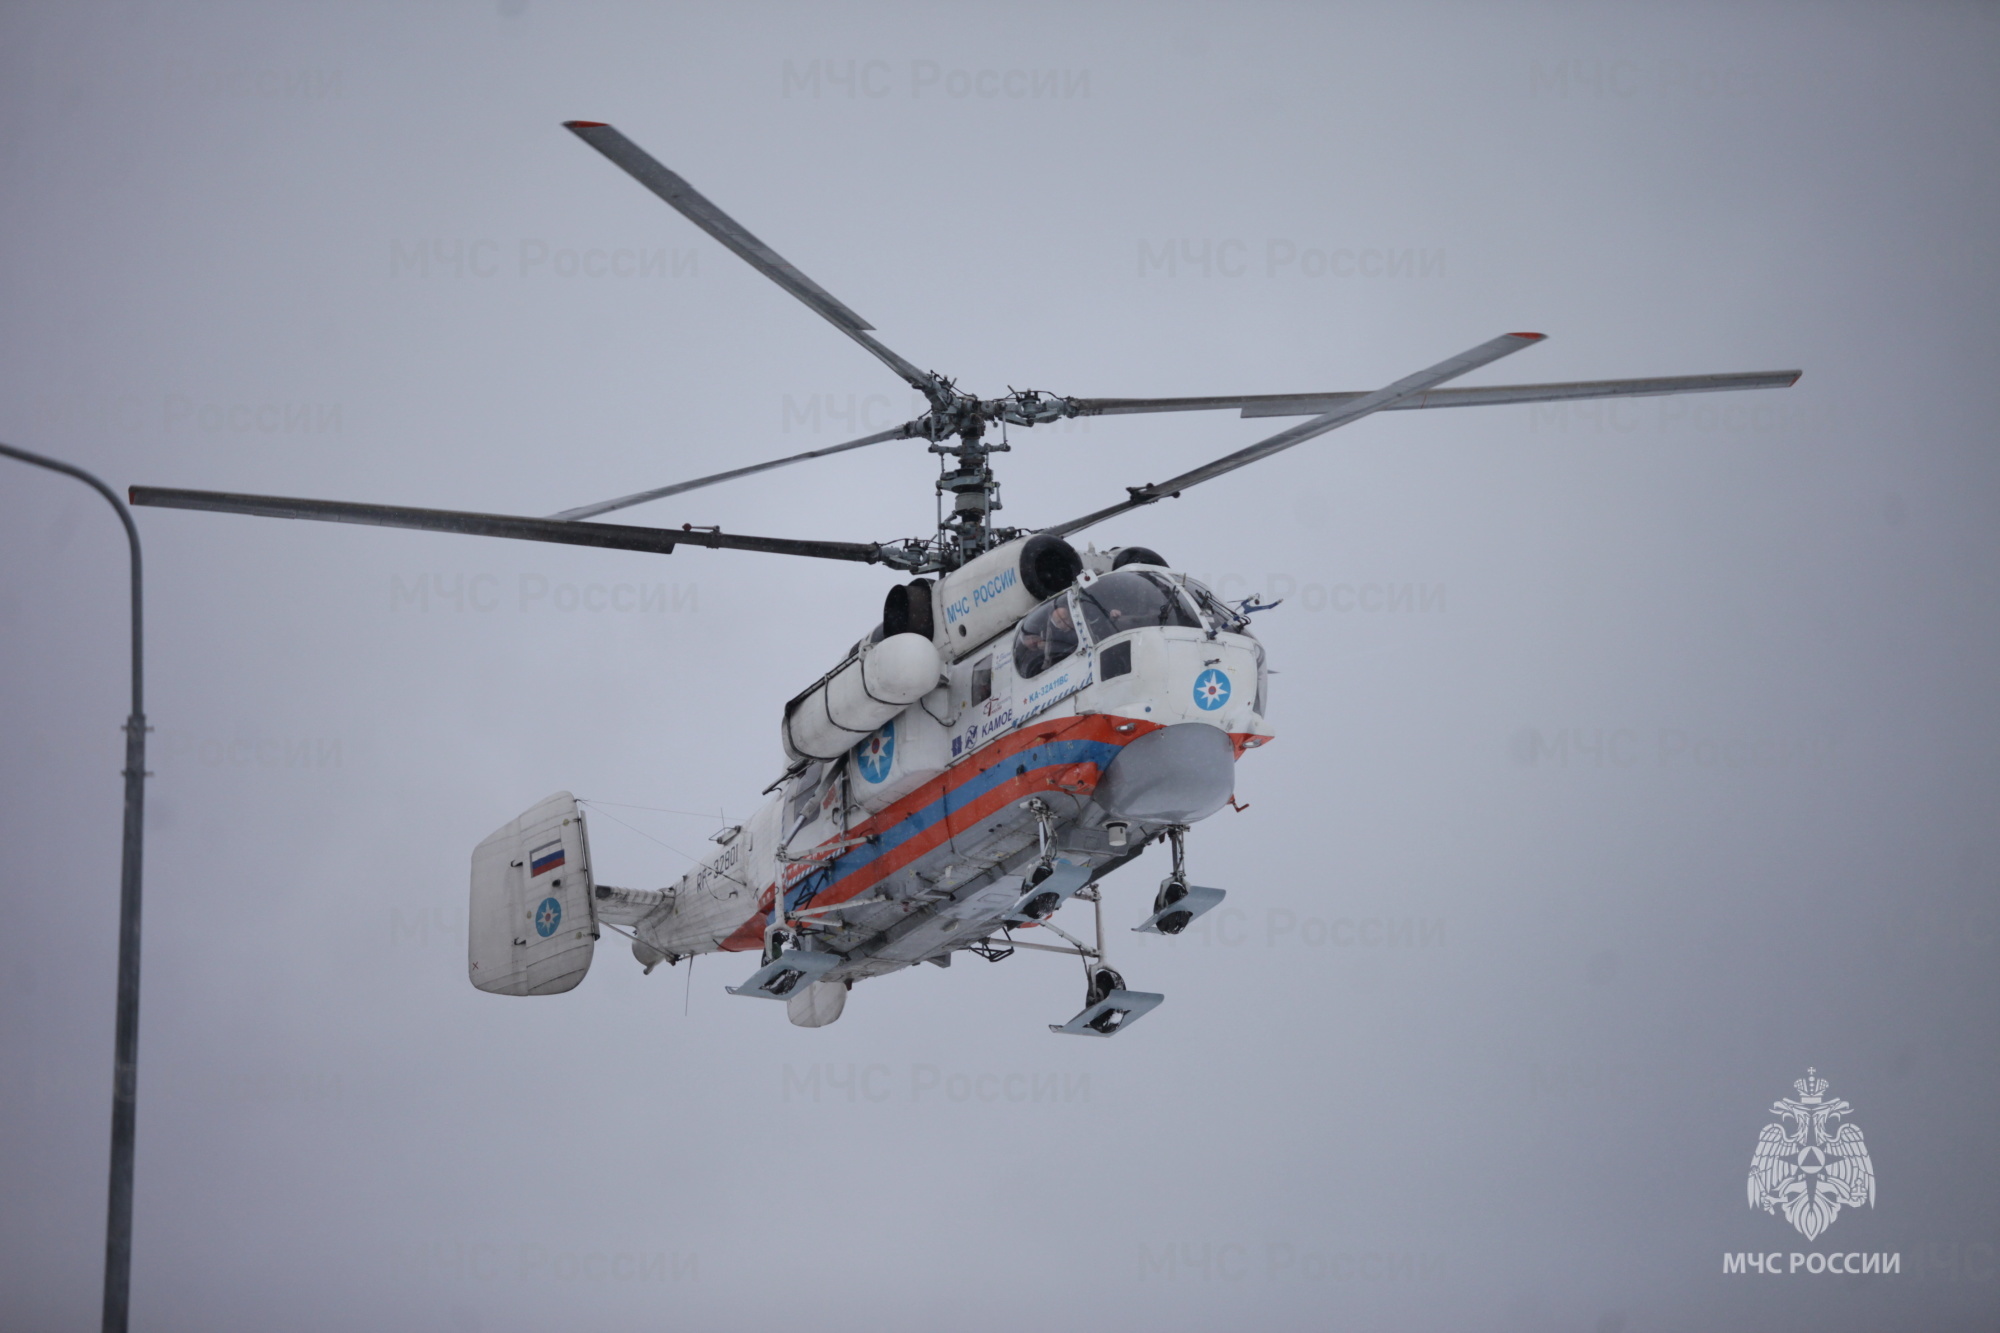 Вертолет санавиации доставил пациента Вышневолоцкое ЦРБ в детскую областную клиническую больницу Твери